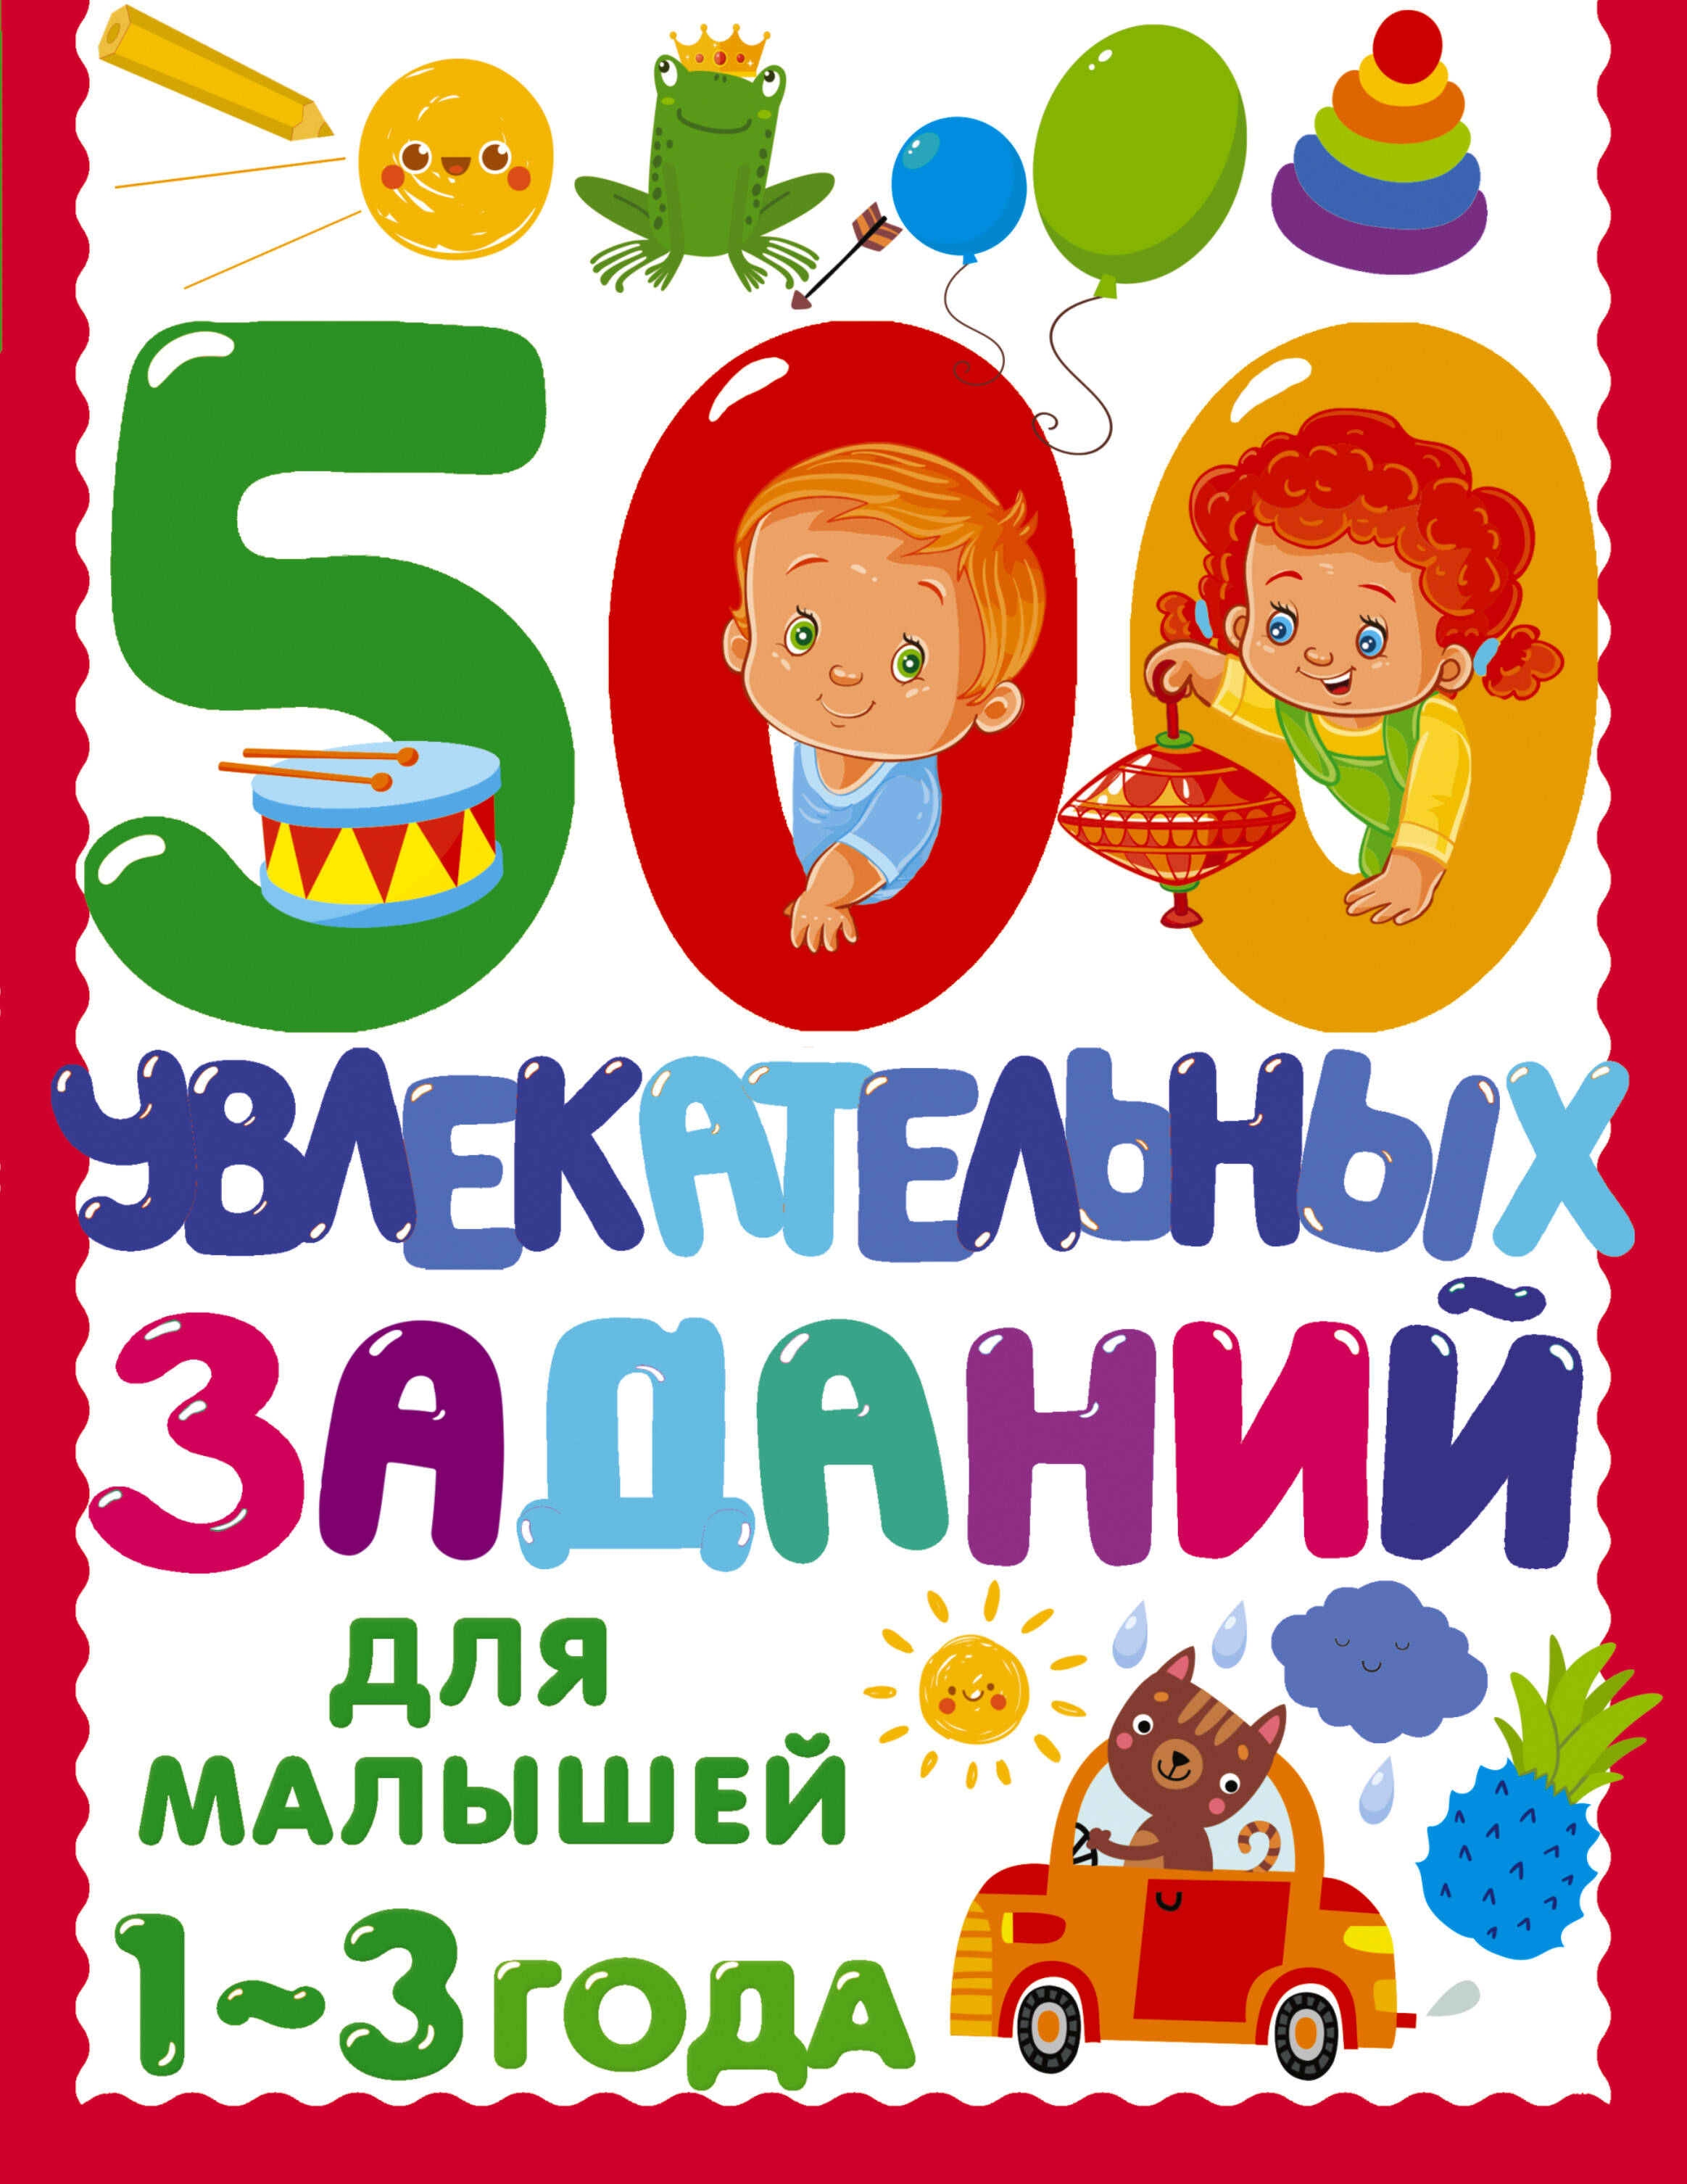 Дмитриева Валентина Геннадьевна 500 увлекательных заданий для малышей 1-3 года